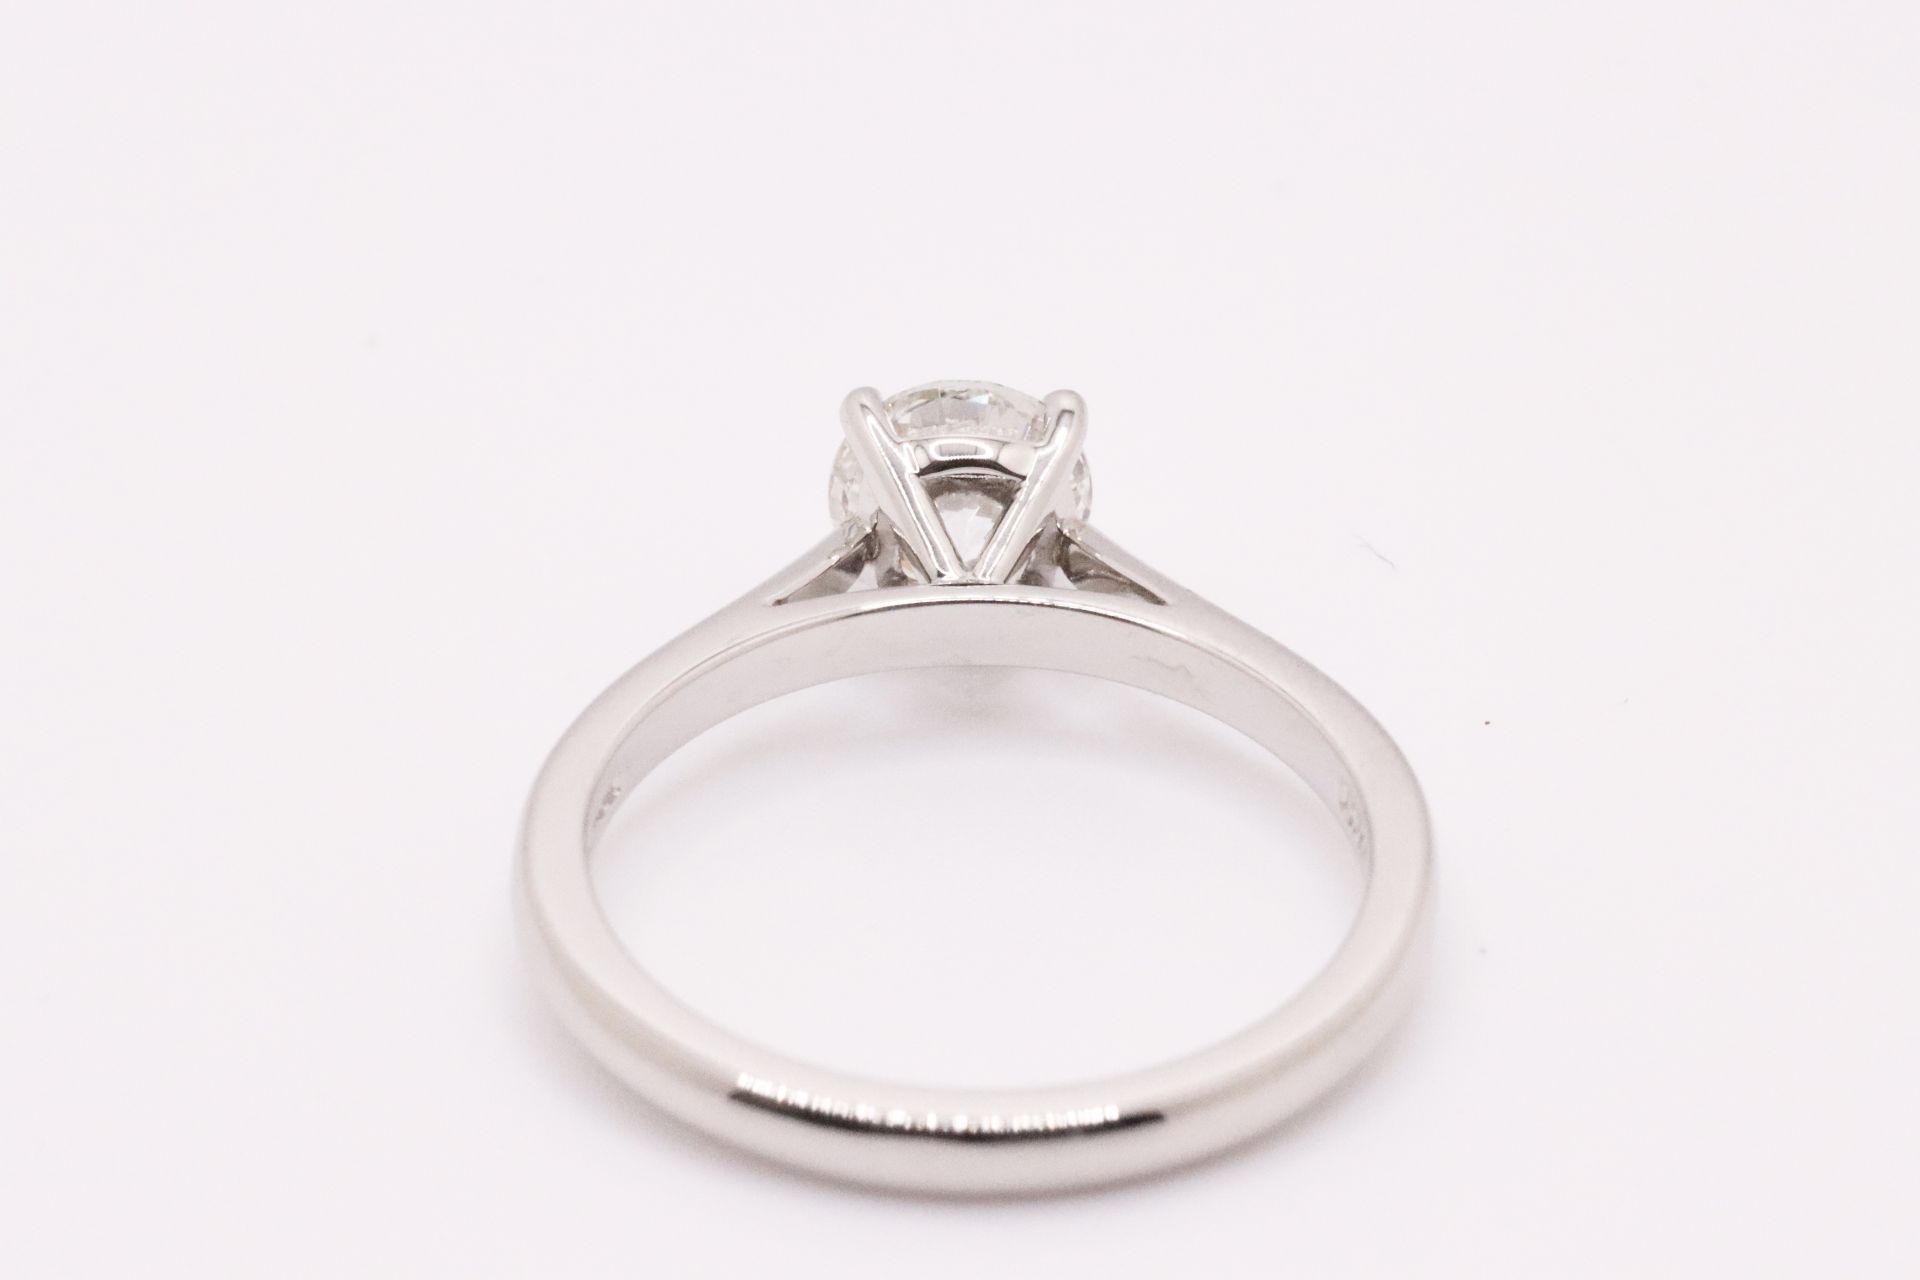 Round Brilliant Cut Natural Diamond Platinum Ring 1.20 Carat D Colour VS2 Clarity ID EX EX - GIA - Image 4 of 5